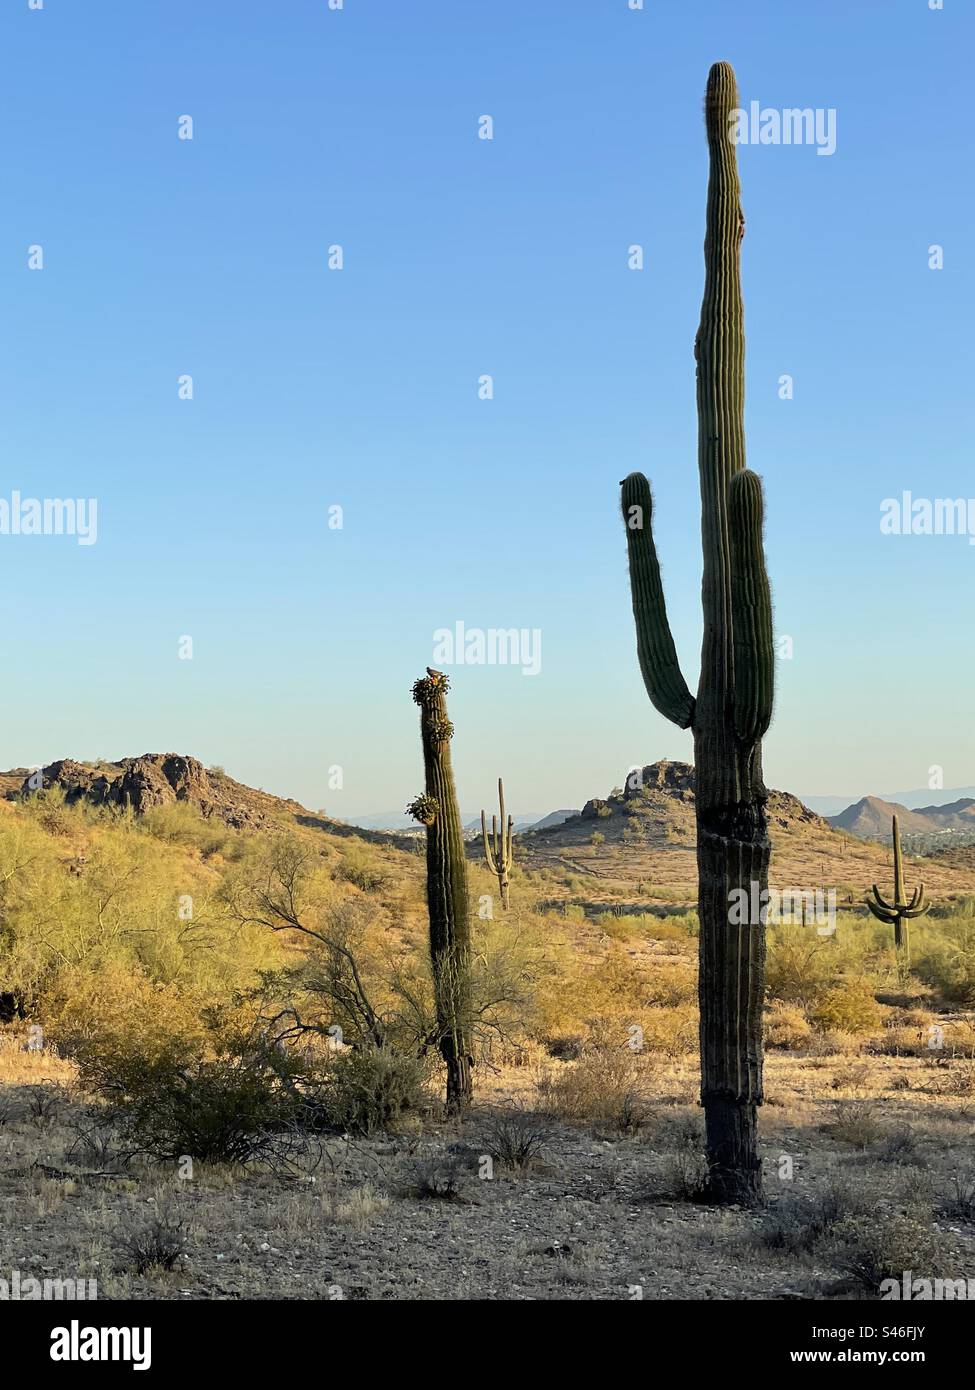 Cactus Saguaro imposants, affleurements rocheux nains éclairés par la lumière du matin, désert de Sonora, ciel bleu brillant, réserve des montagnes Phoenix, Arizona Banque D'Images